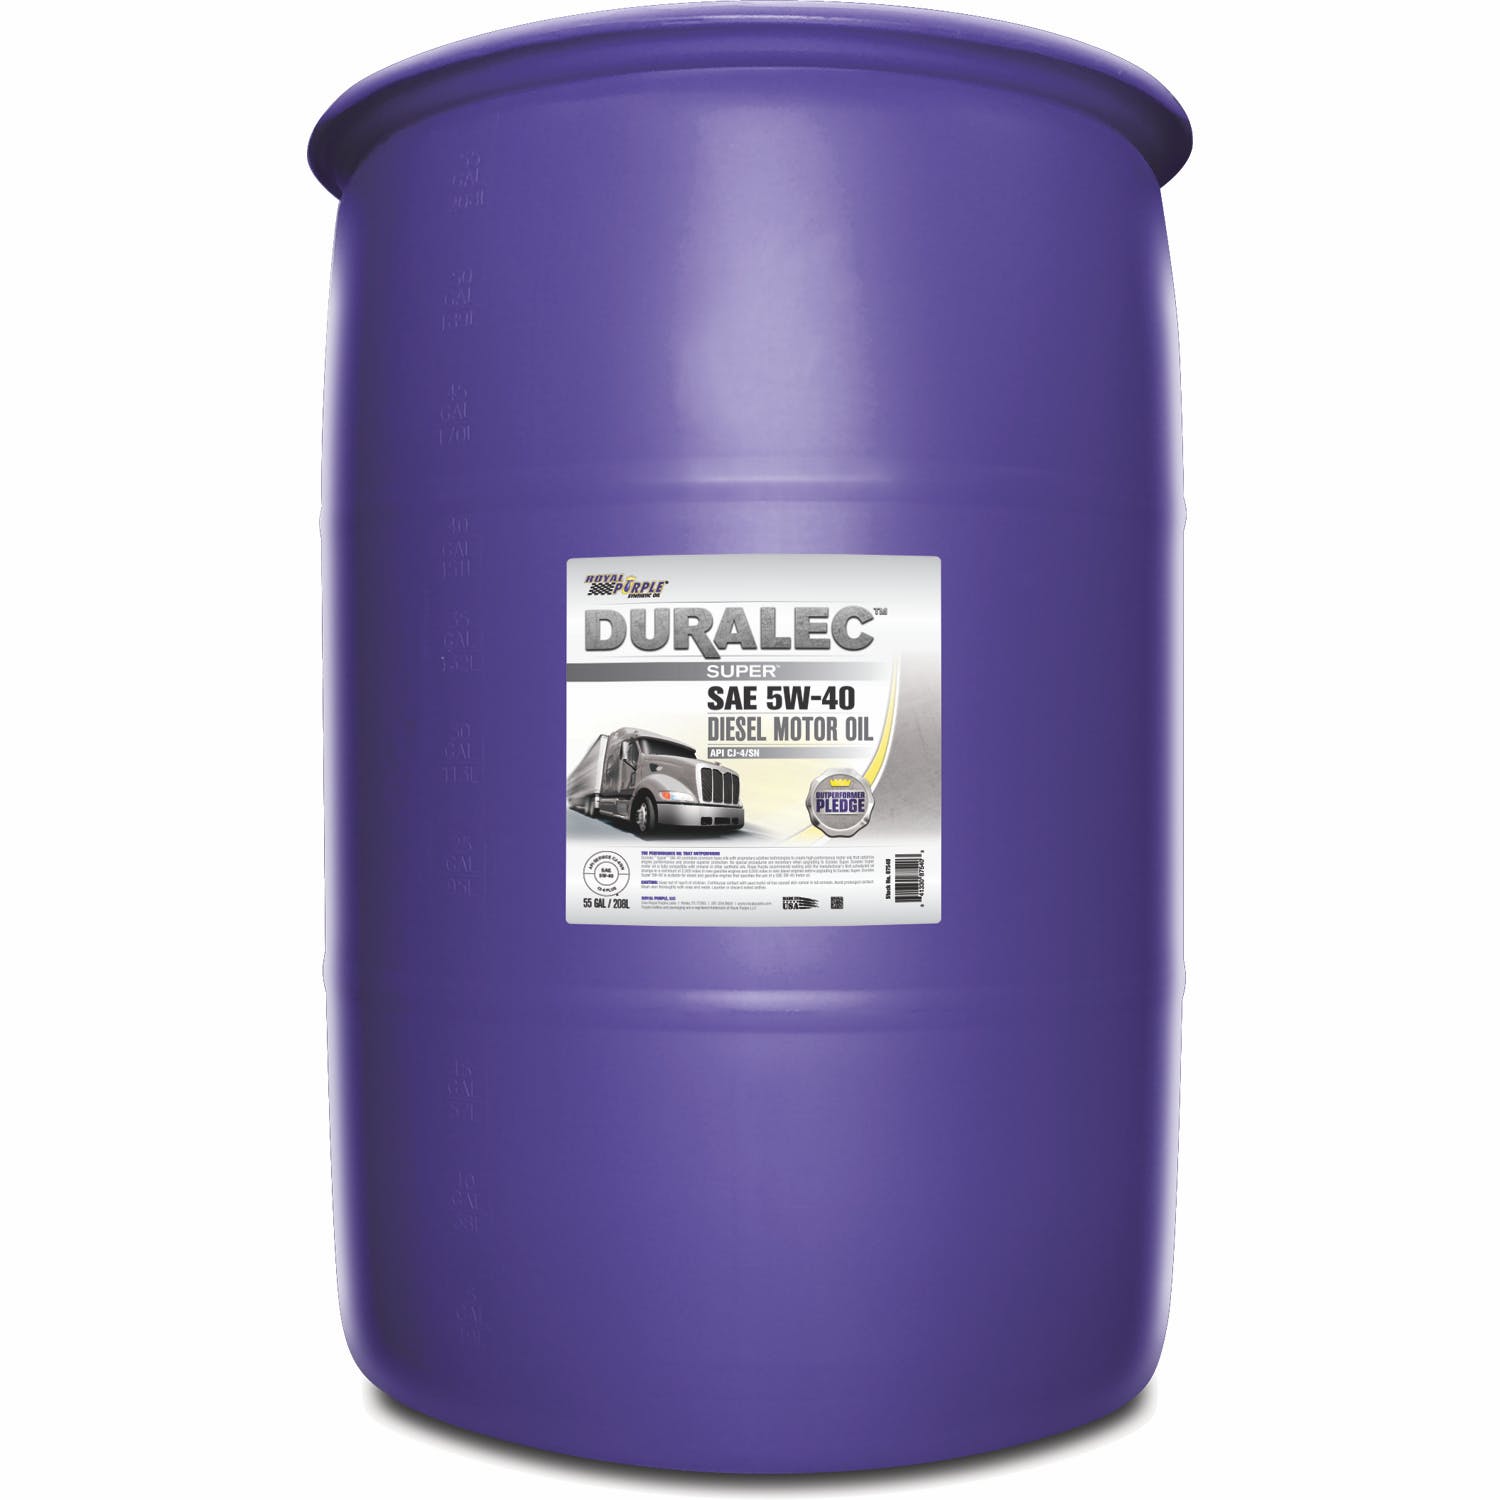 Royal Purple 87540 5W-40 CK-4 Duralec Super, 55 gal Drum